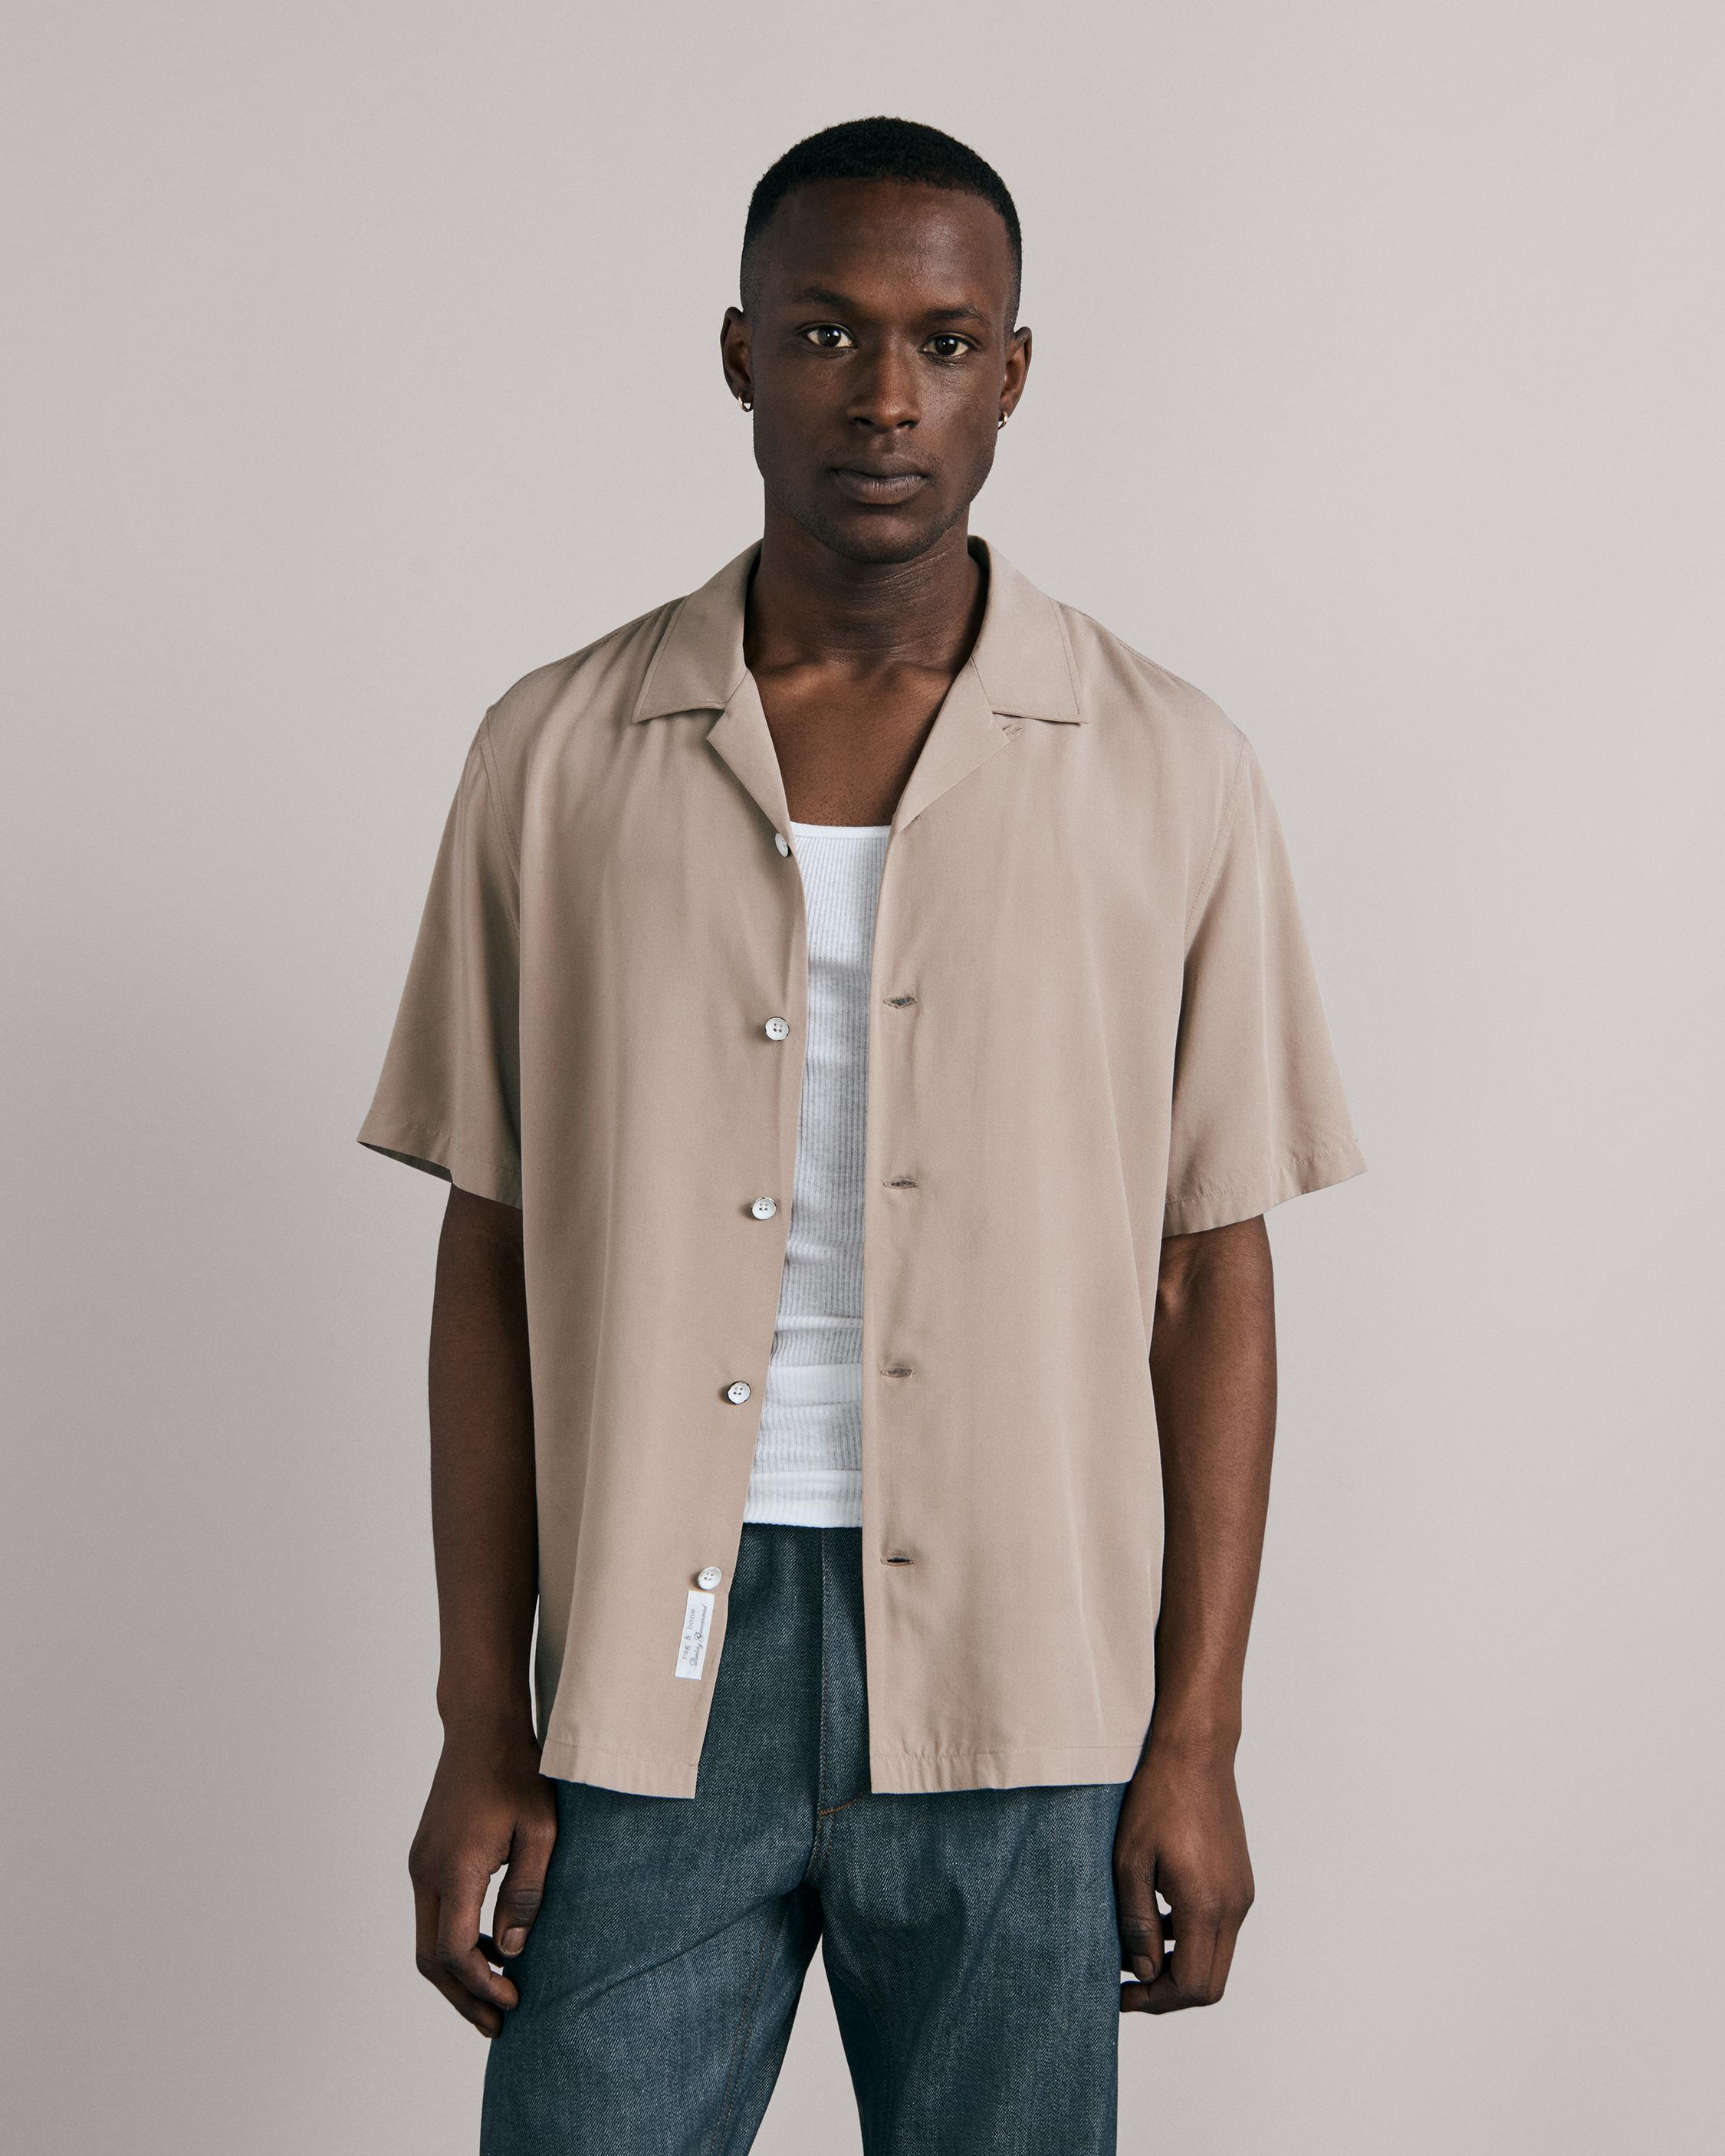 Shirts for Men with an Urban Edge | rag & bone